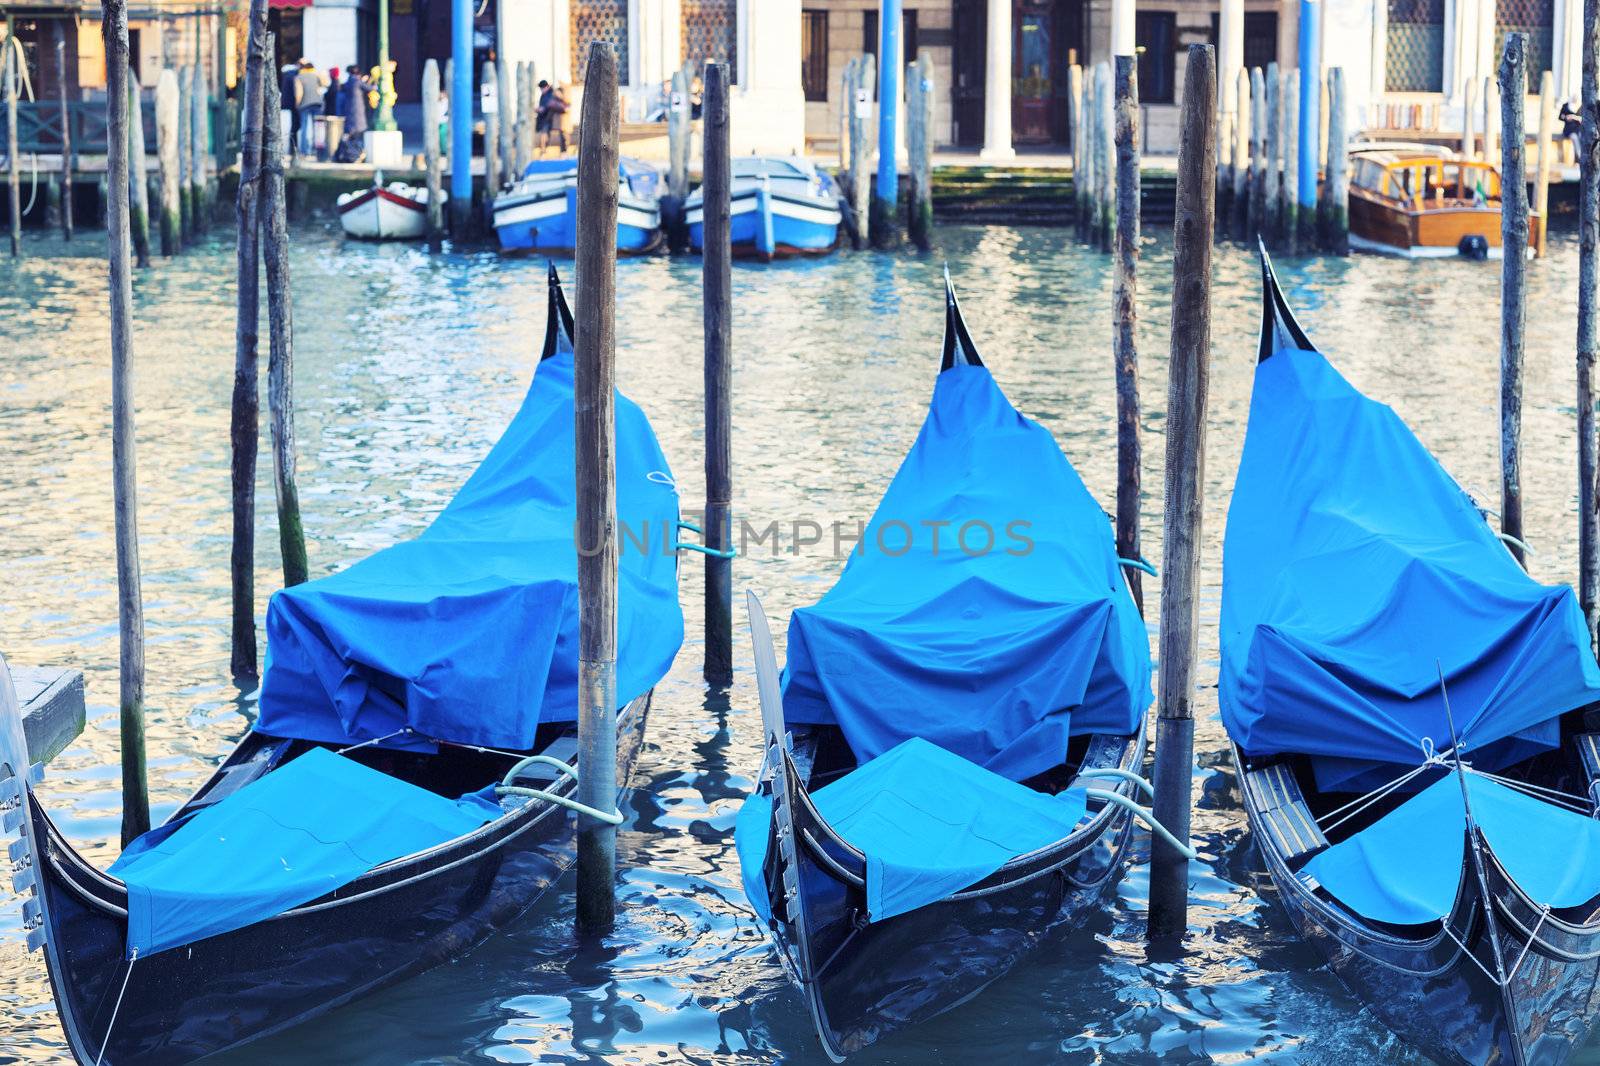 Three gondolas in Venice, Grand Canal, Italy. 